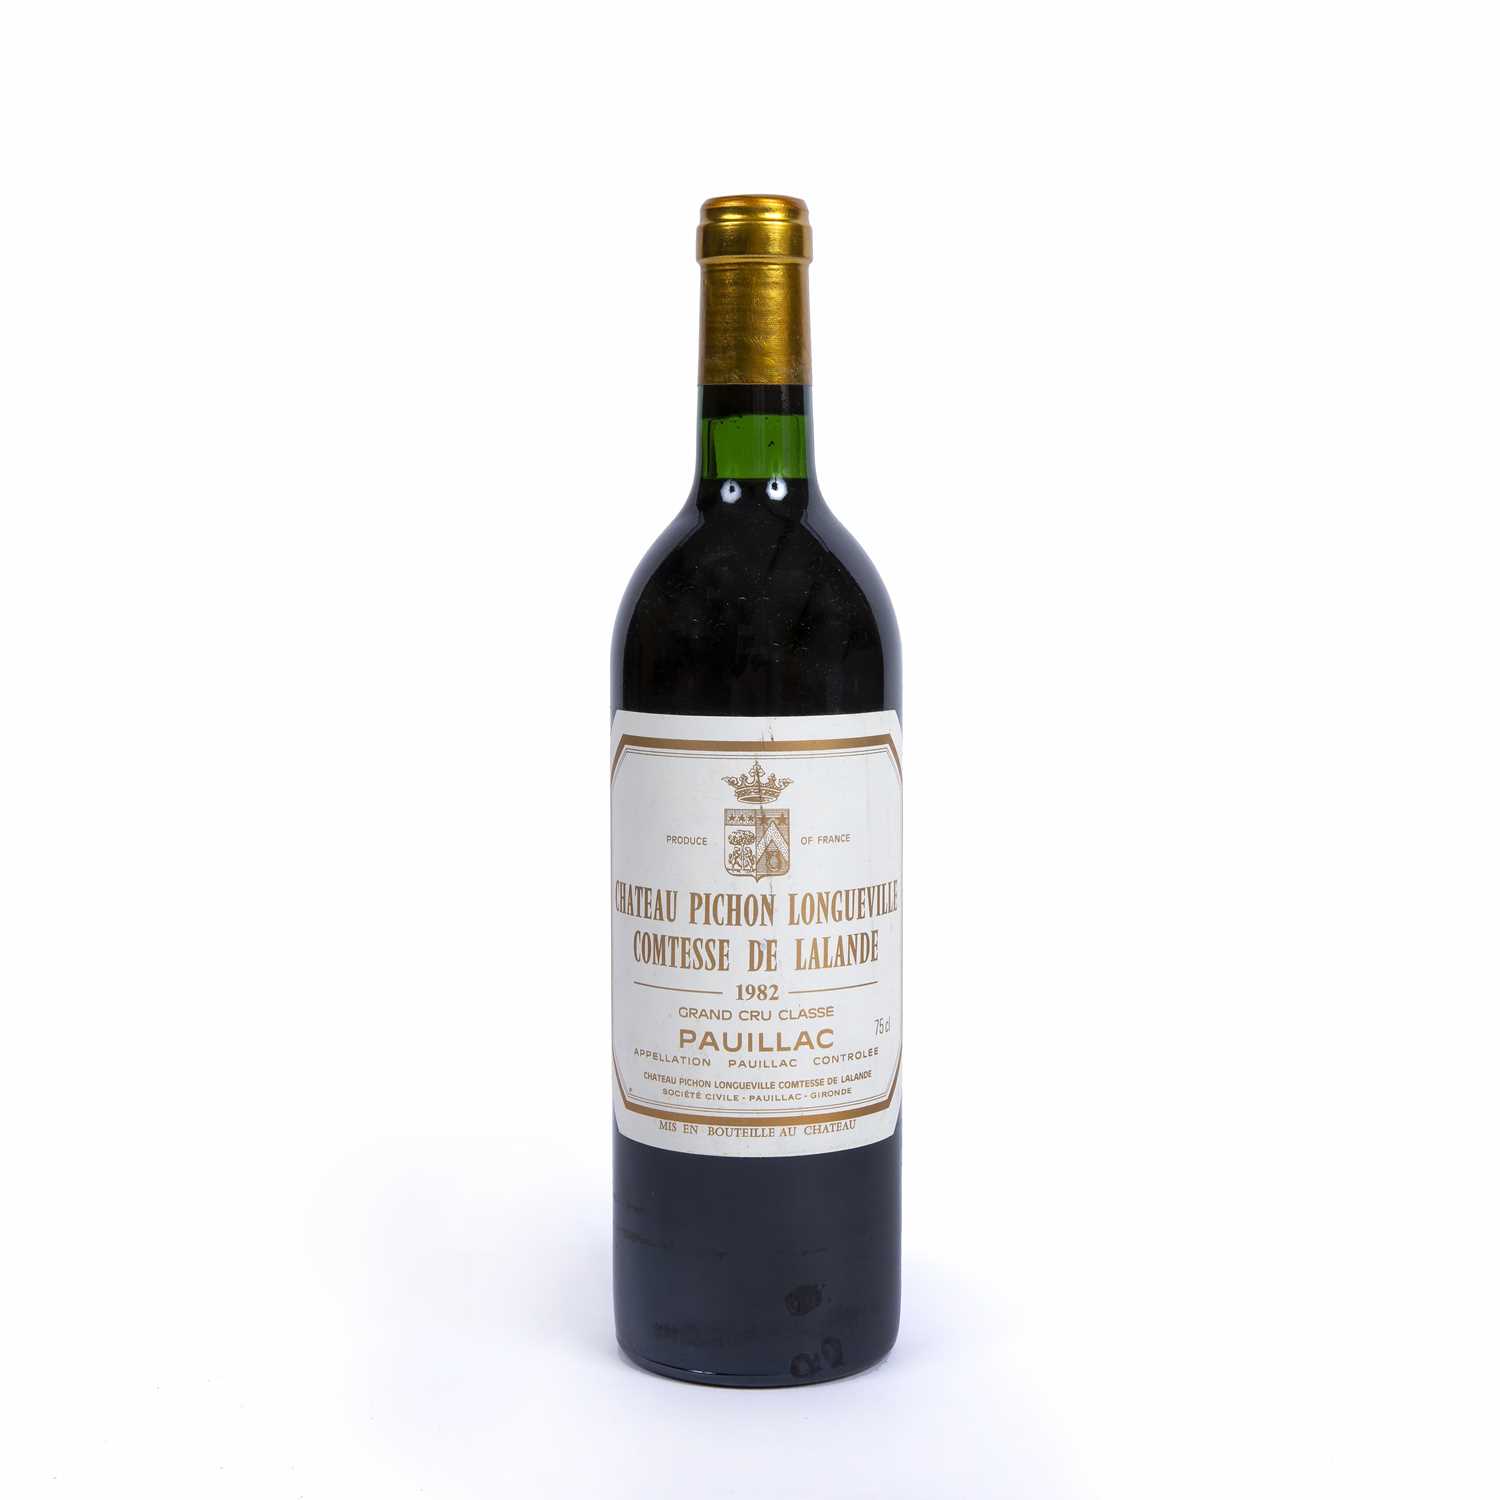 A bottle of Chateau Pichon Longueville Comtesse de Lalande 1982Condition report: Level at base of